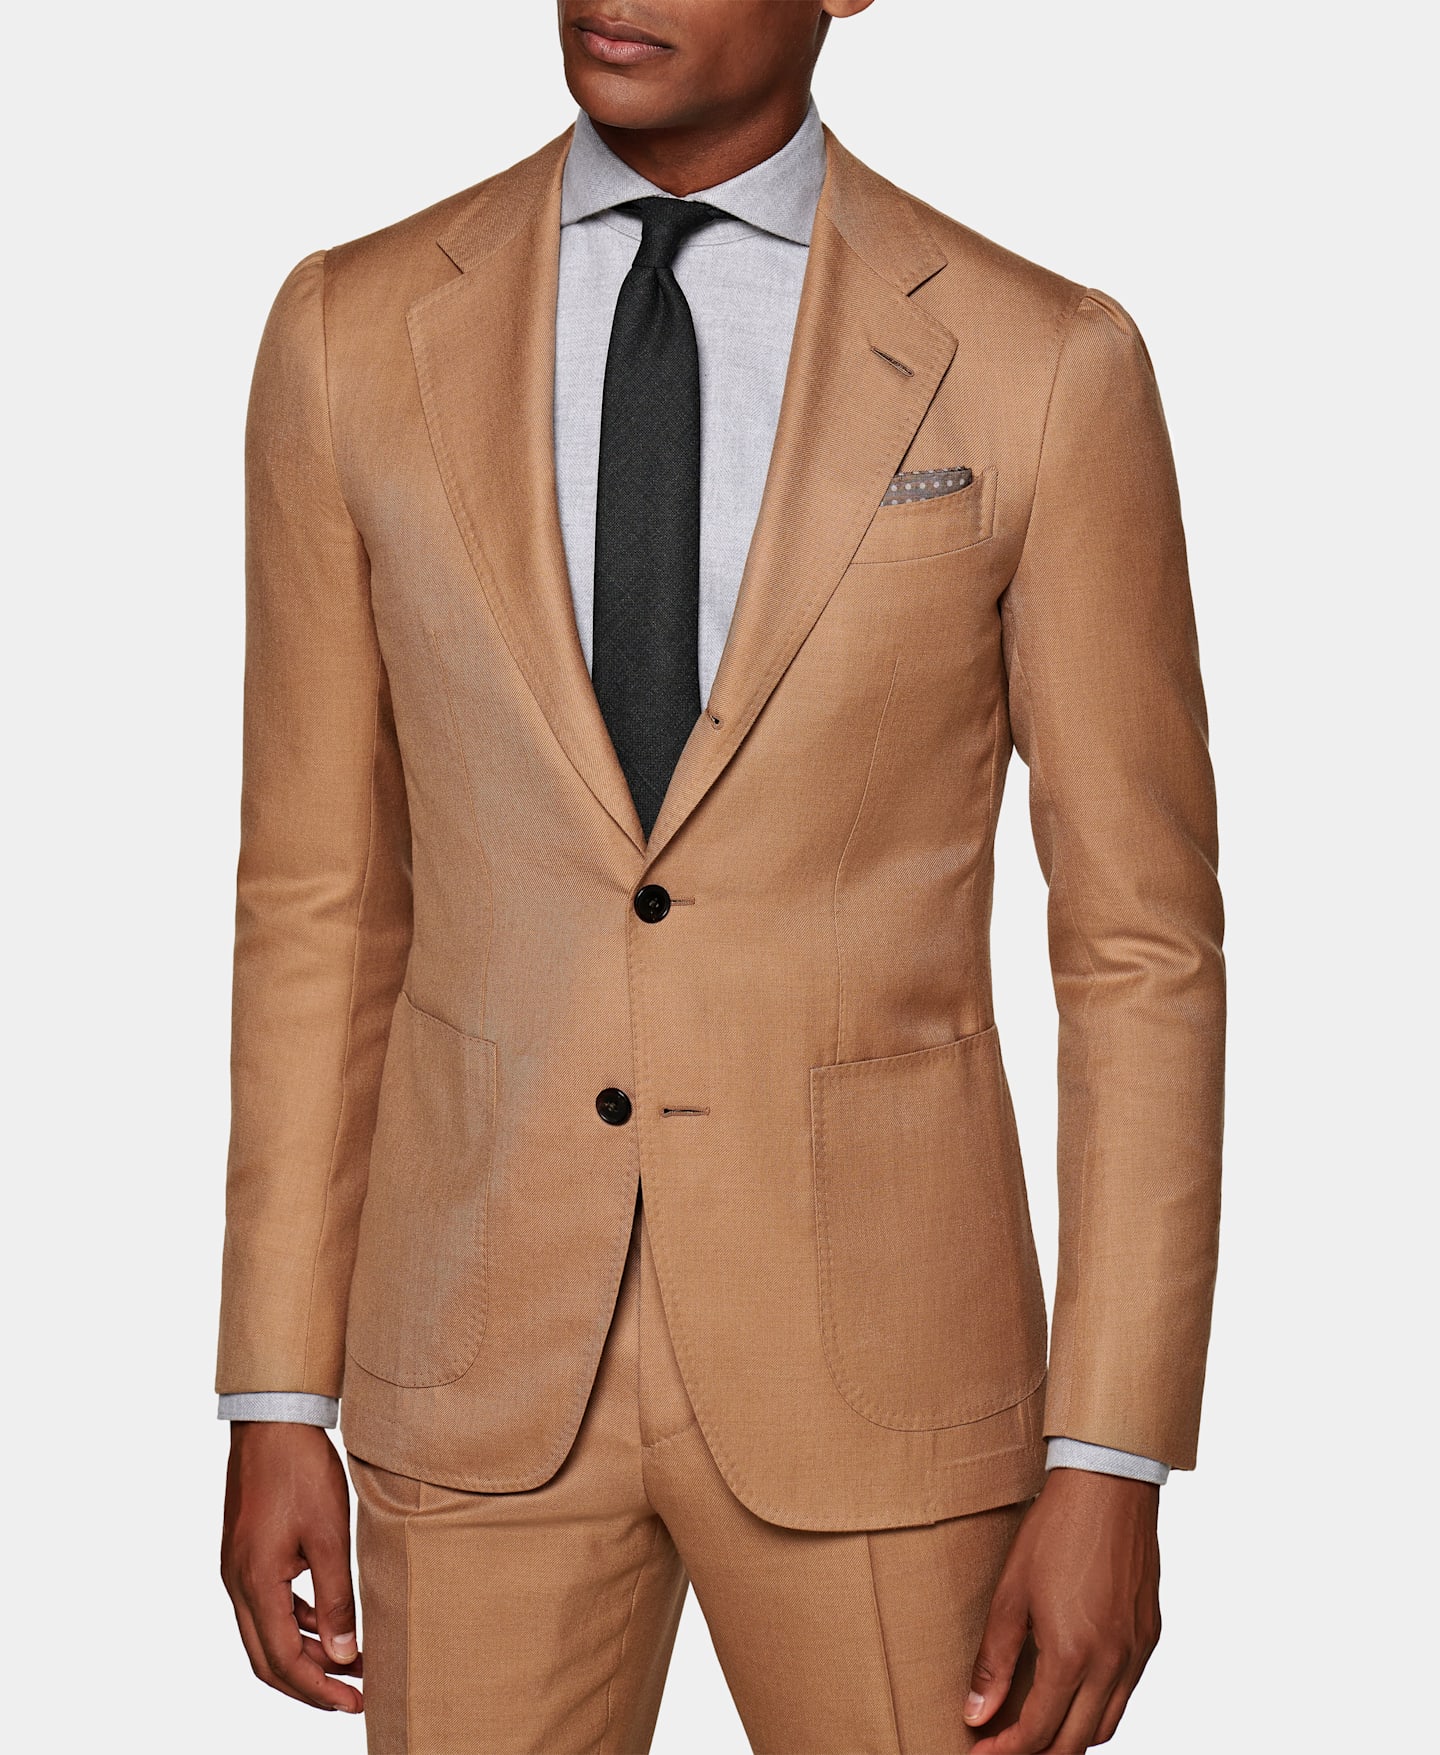 horisont strukturelt Vedrørende Custom Suits | Design Your Own | Suitsupply | SUITSUPPLY US